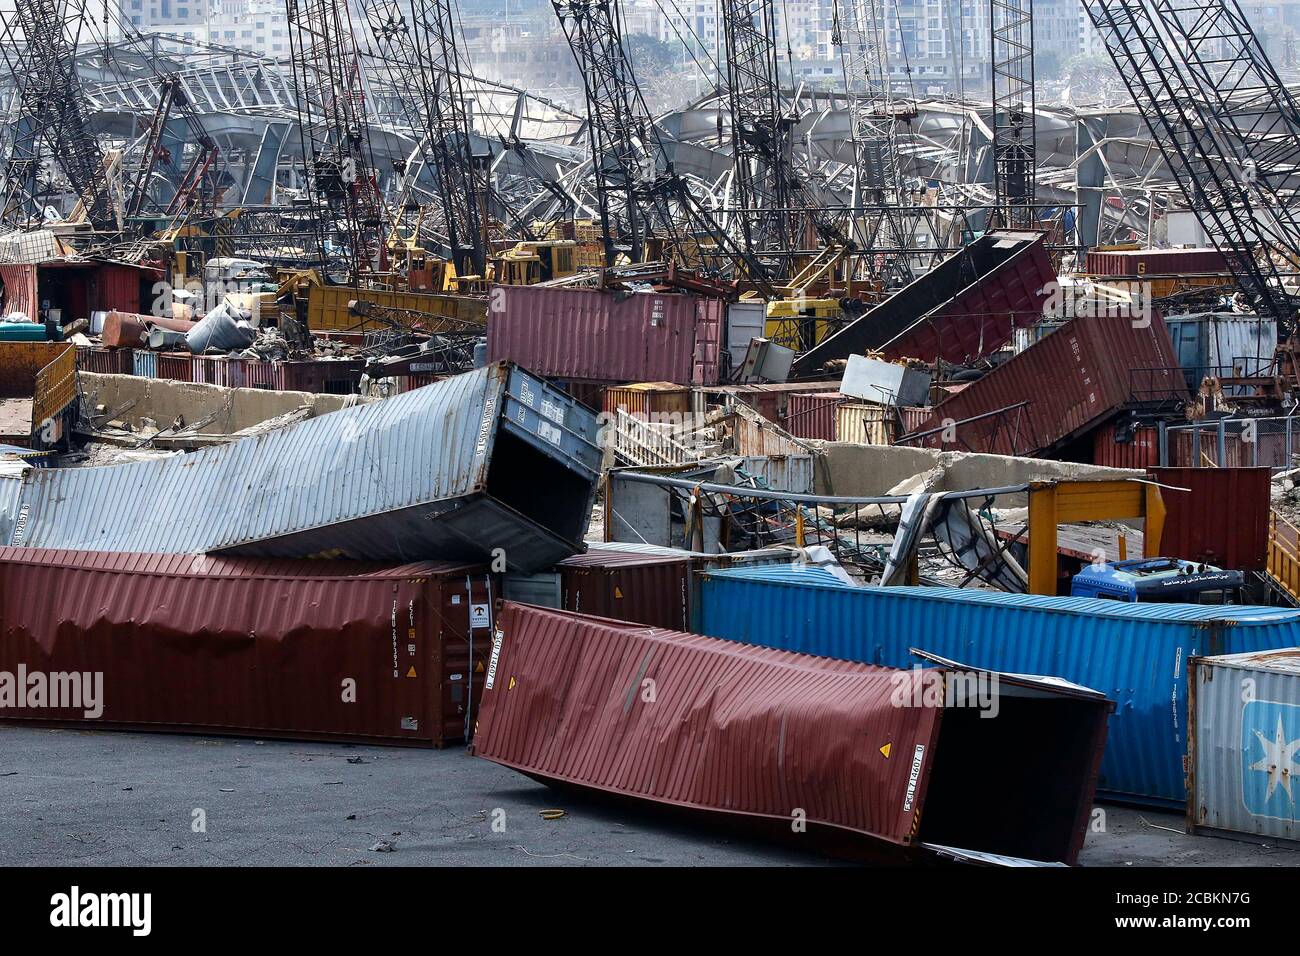 (200814) -- BEYROUTH, le 14 août 2020 (Xinhua) -- des conteneurs endommagés sont visibles au port de Beyrouth, au Liban, le 14 août 2020. Deux explosions ont secoué Beyrouth le 4 août, tuant 177 personnes et en blessant au moins 6,000. (Xinhua/Bilal Jawich) Banque D'Images